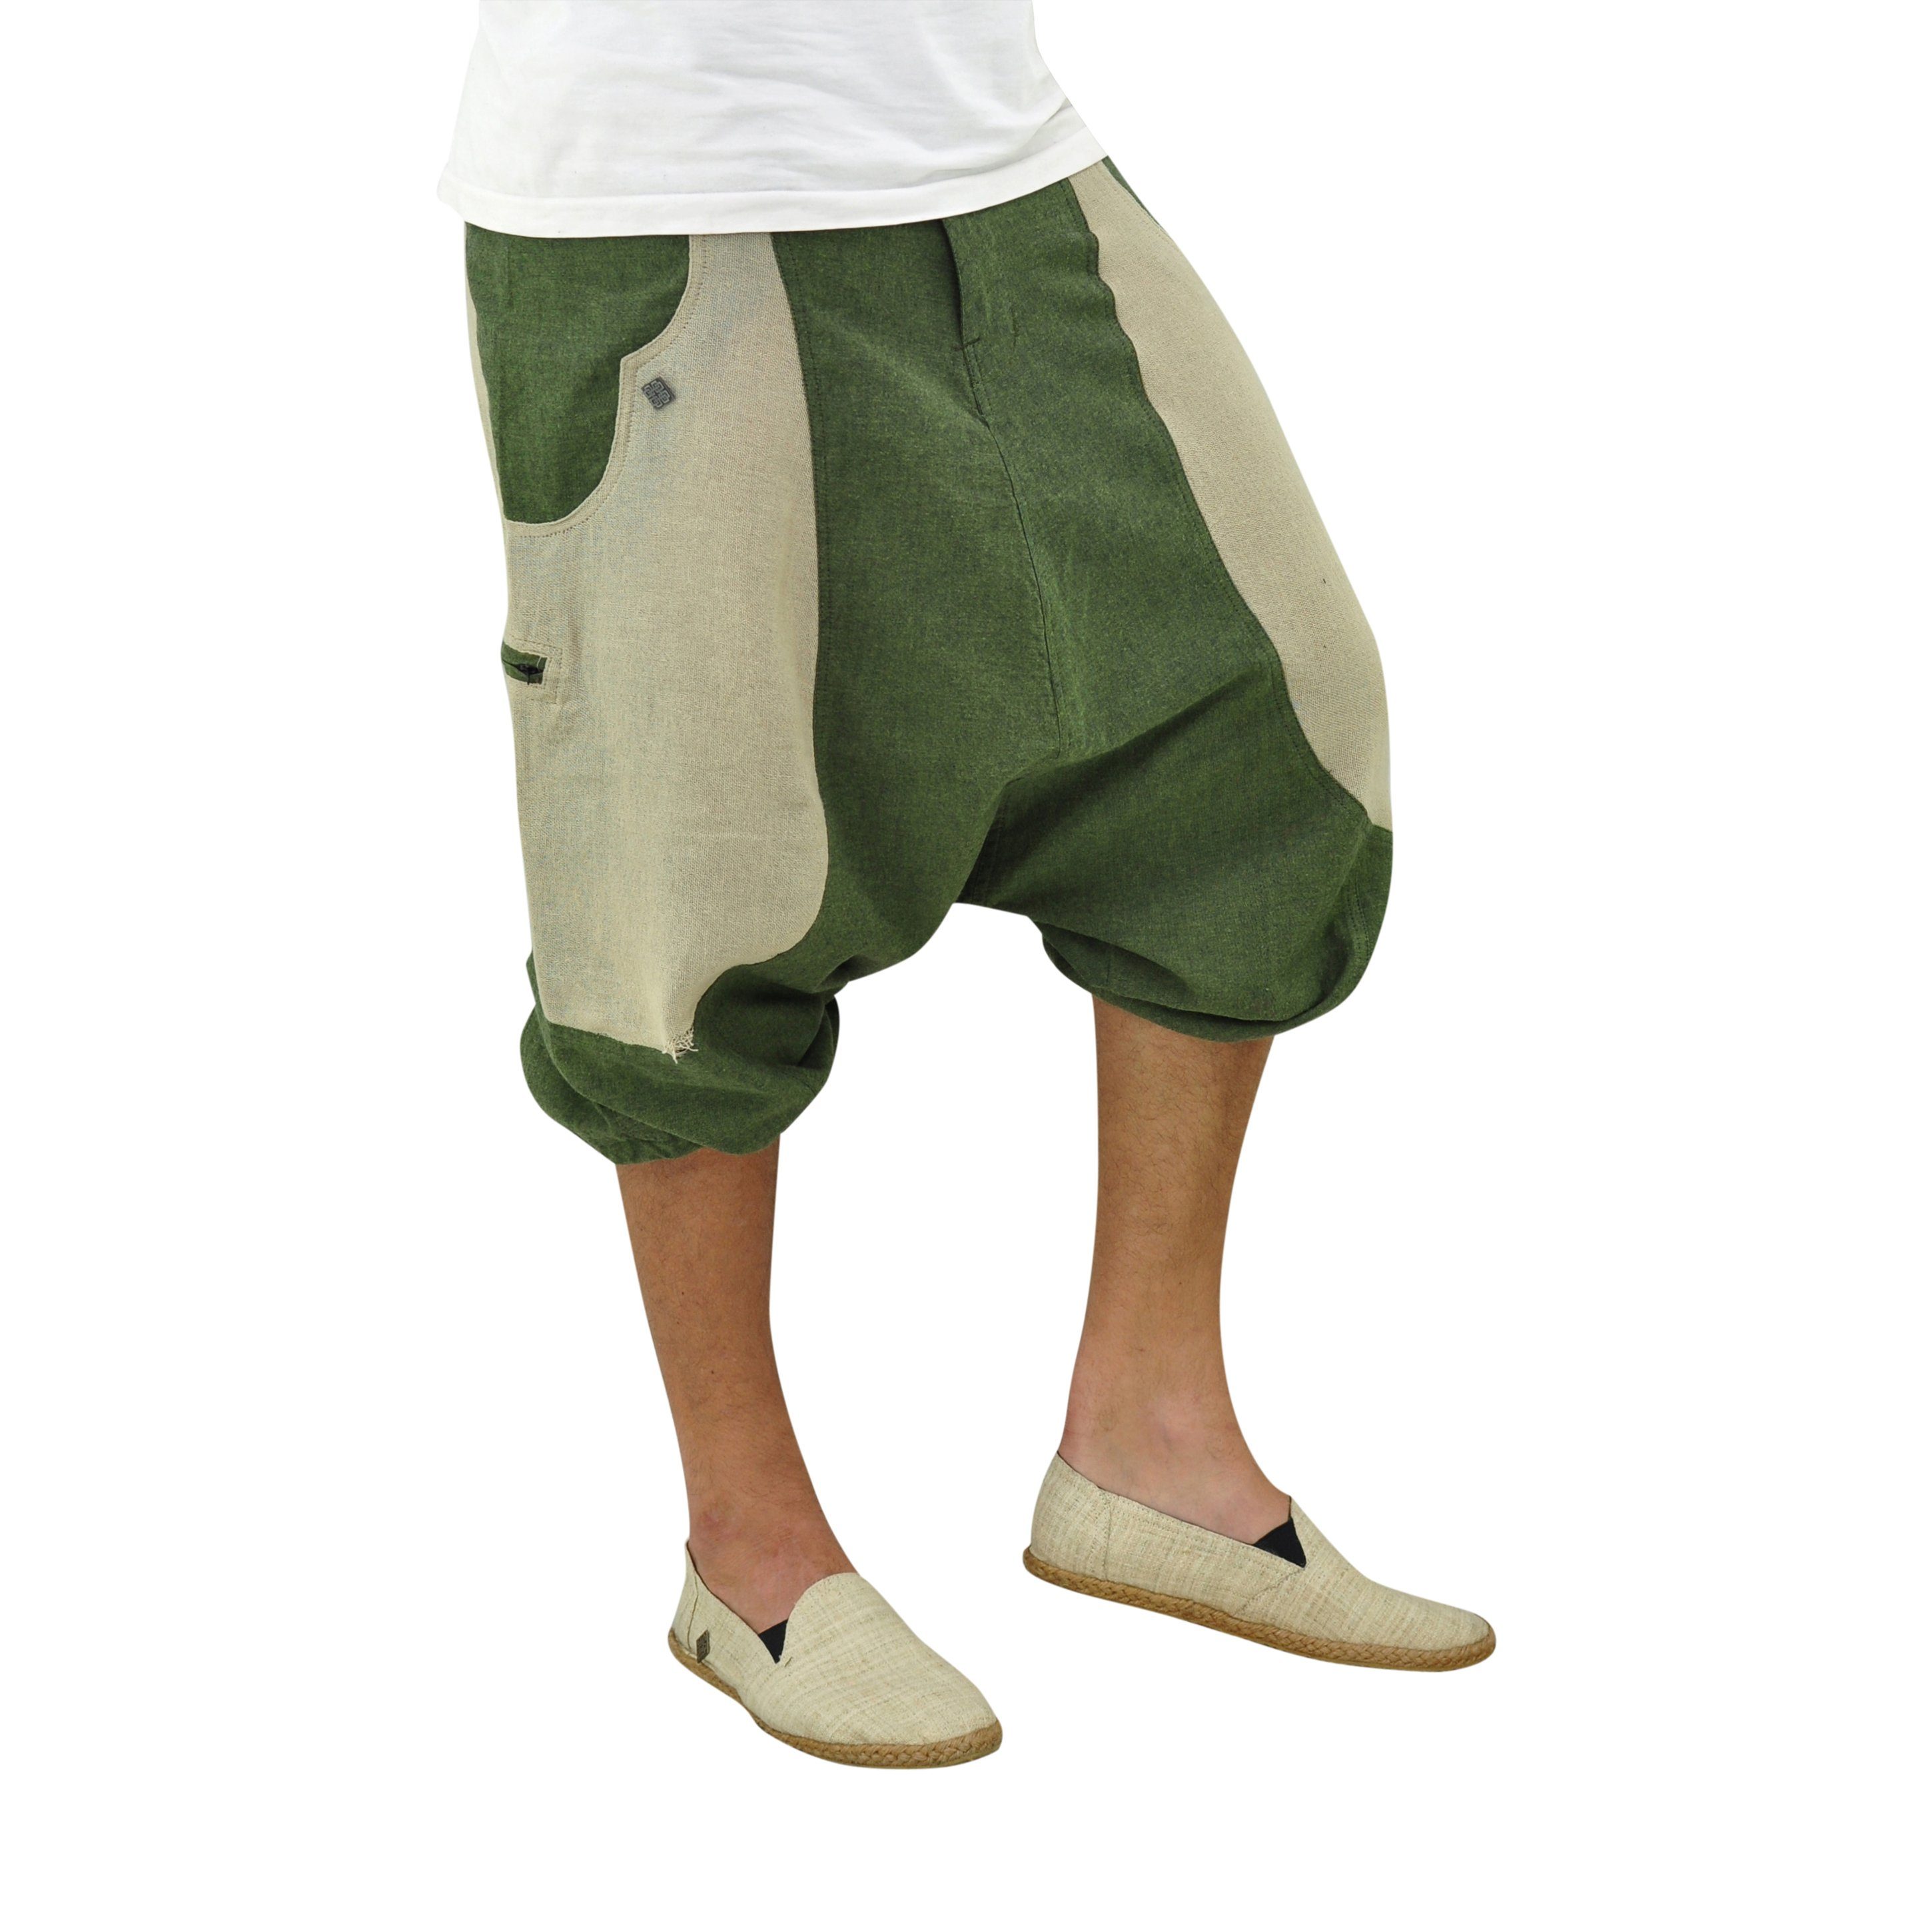 & grün Shorts Goa Unisex, Haremshose virblatt Haremshose kurze 2 kurz mitteltief Schritt, Farbblock-Design, Reißverschlusstaschen fallender Herren Damen, Hose